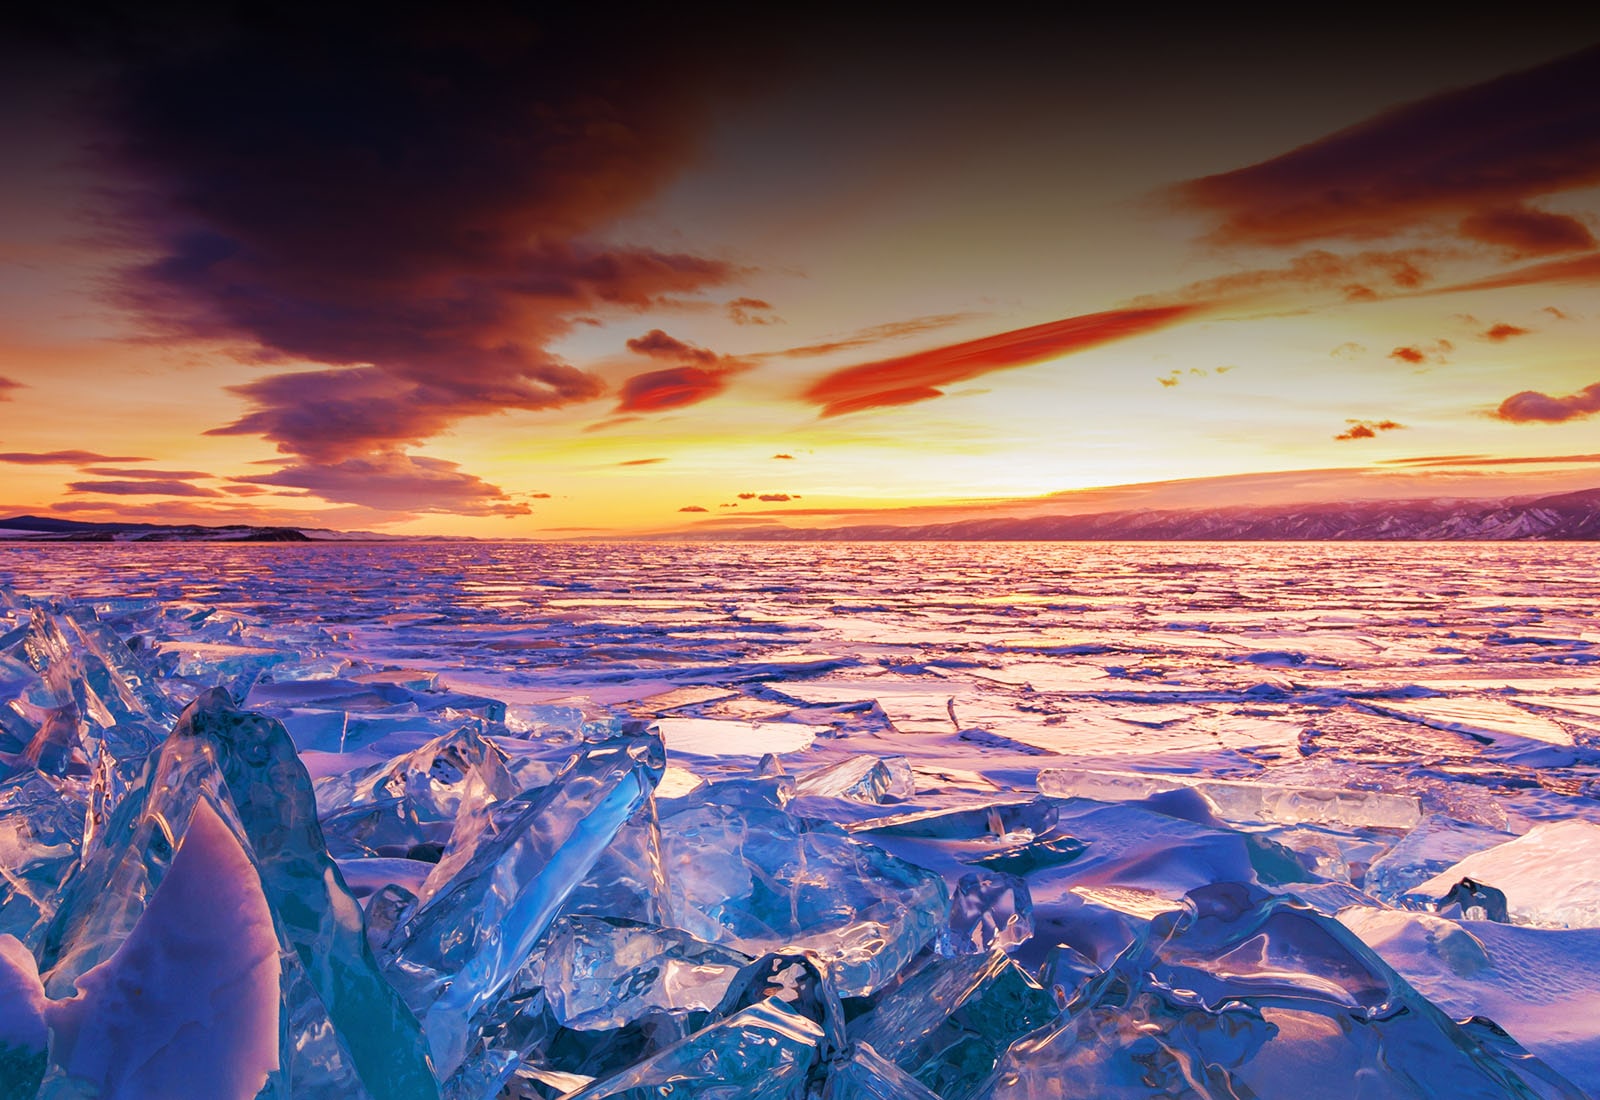 En naturskjønn utsikt over en solnedgang og isbreer.